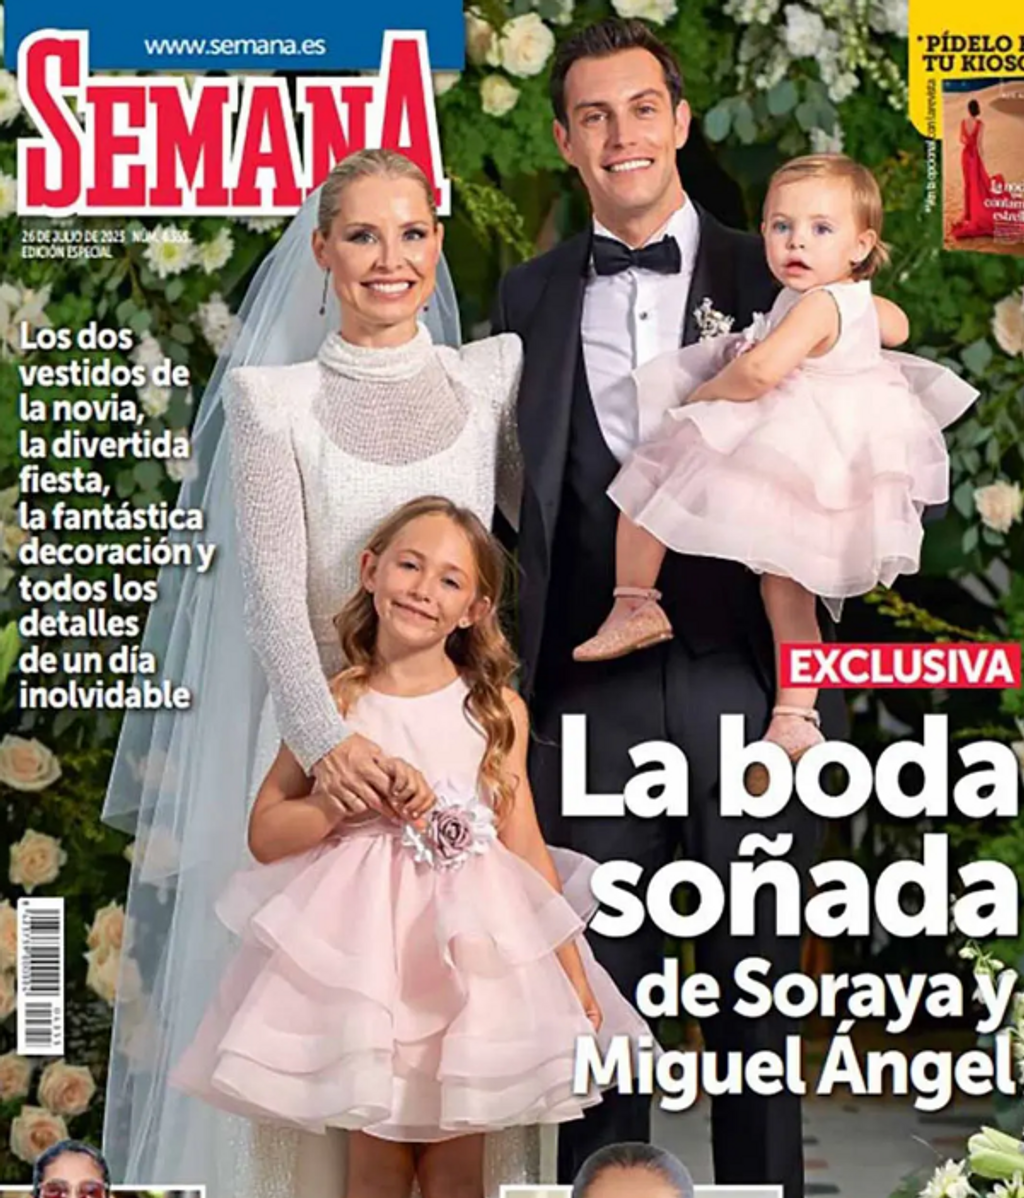 Soraya Arnelas y Miguel Ángel Herrera posan para la revista 'Semana' en su boda